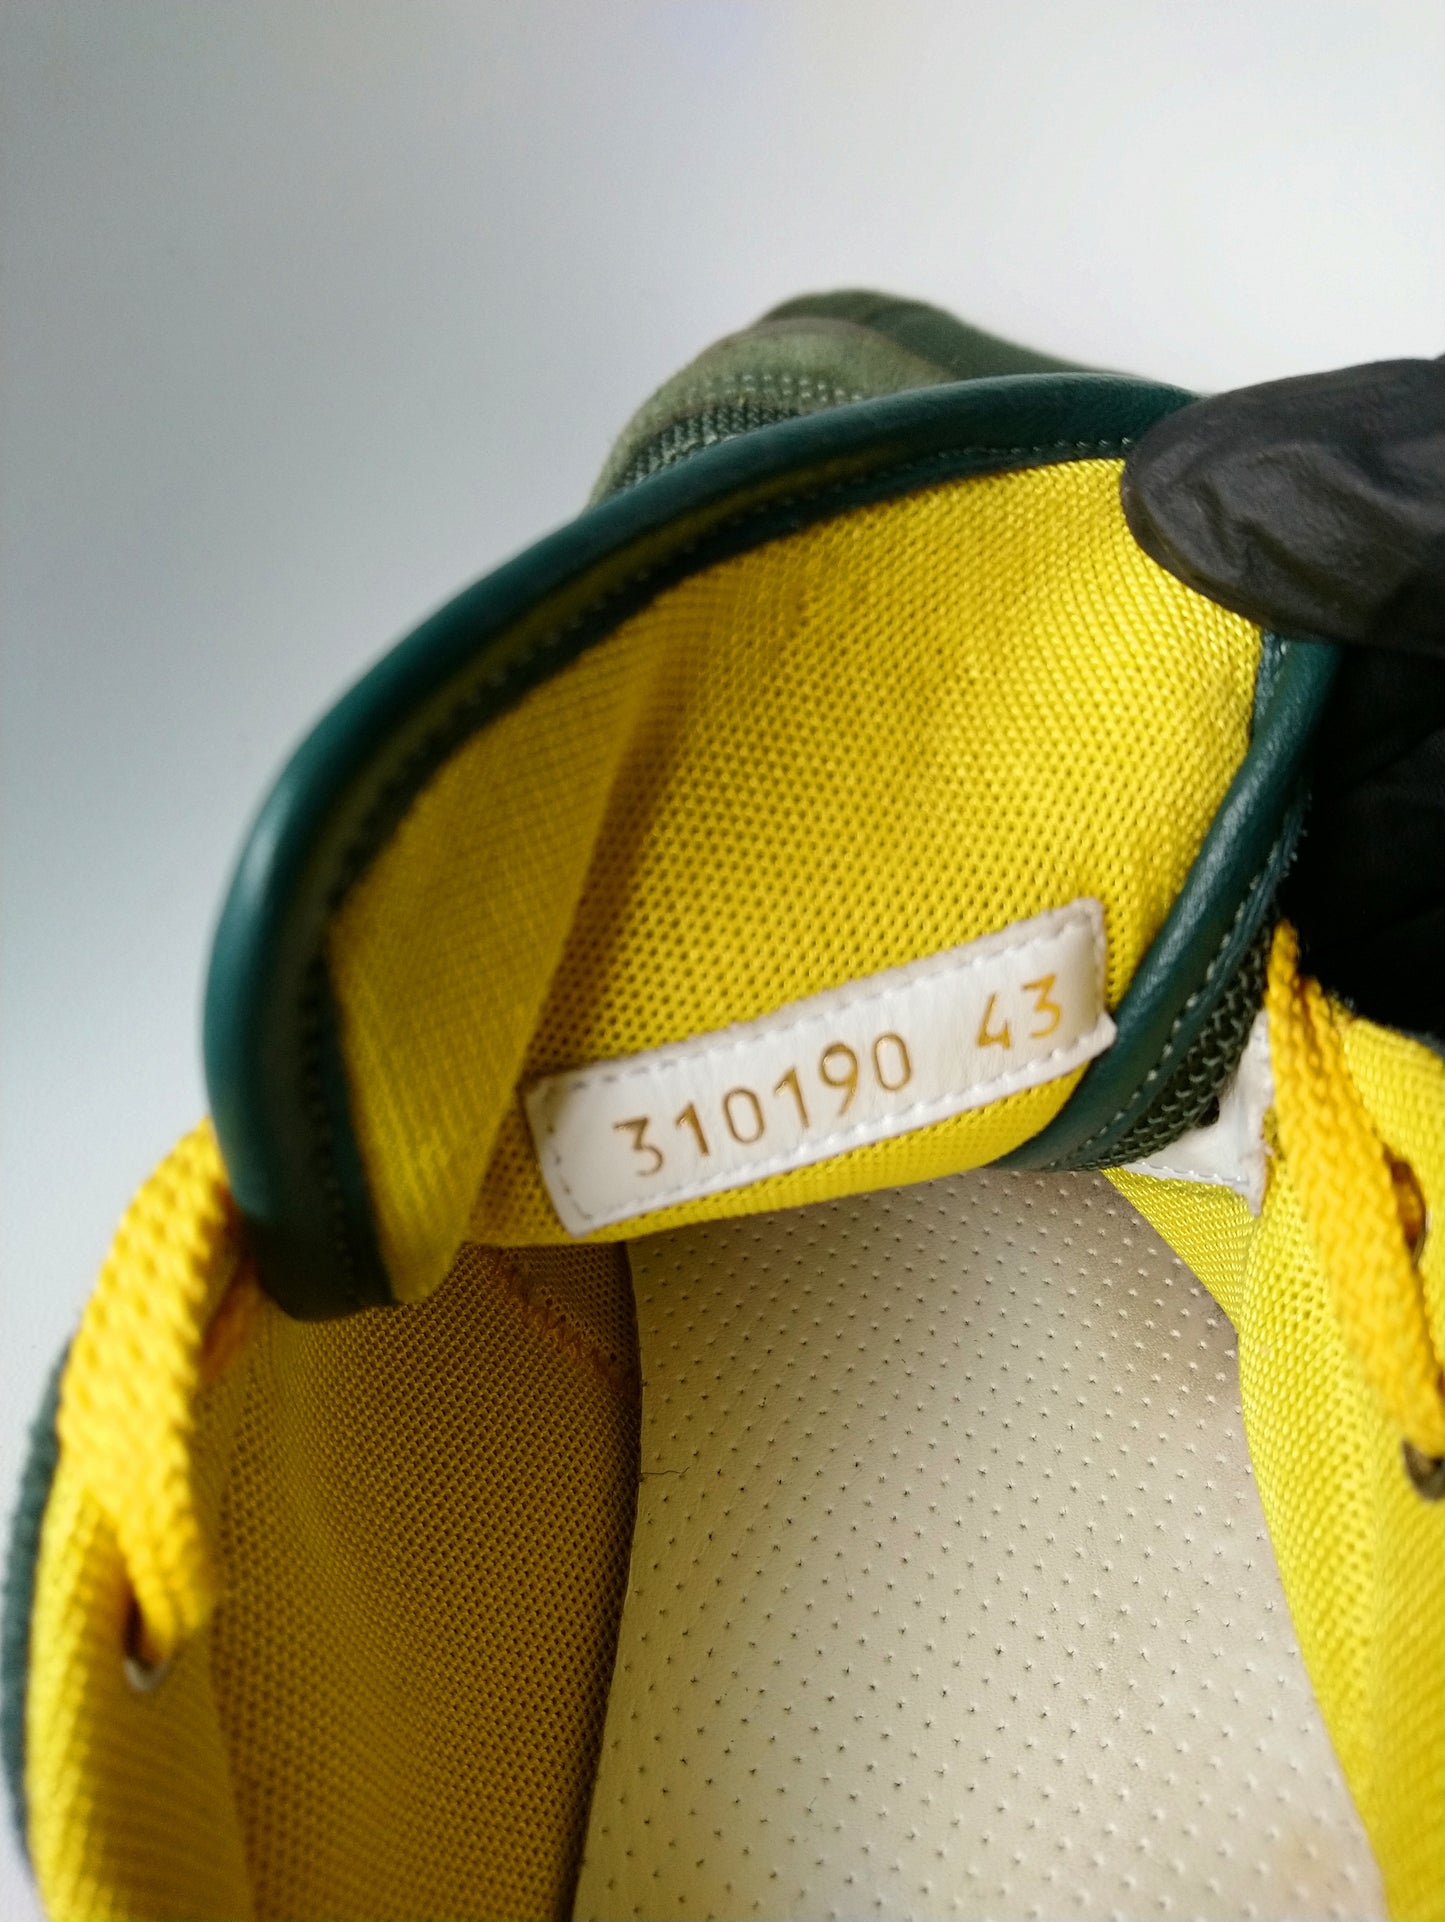 ELEA / 11TY Sneakers. Color amarillo verde oscuro de color. Tamaño 43.